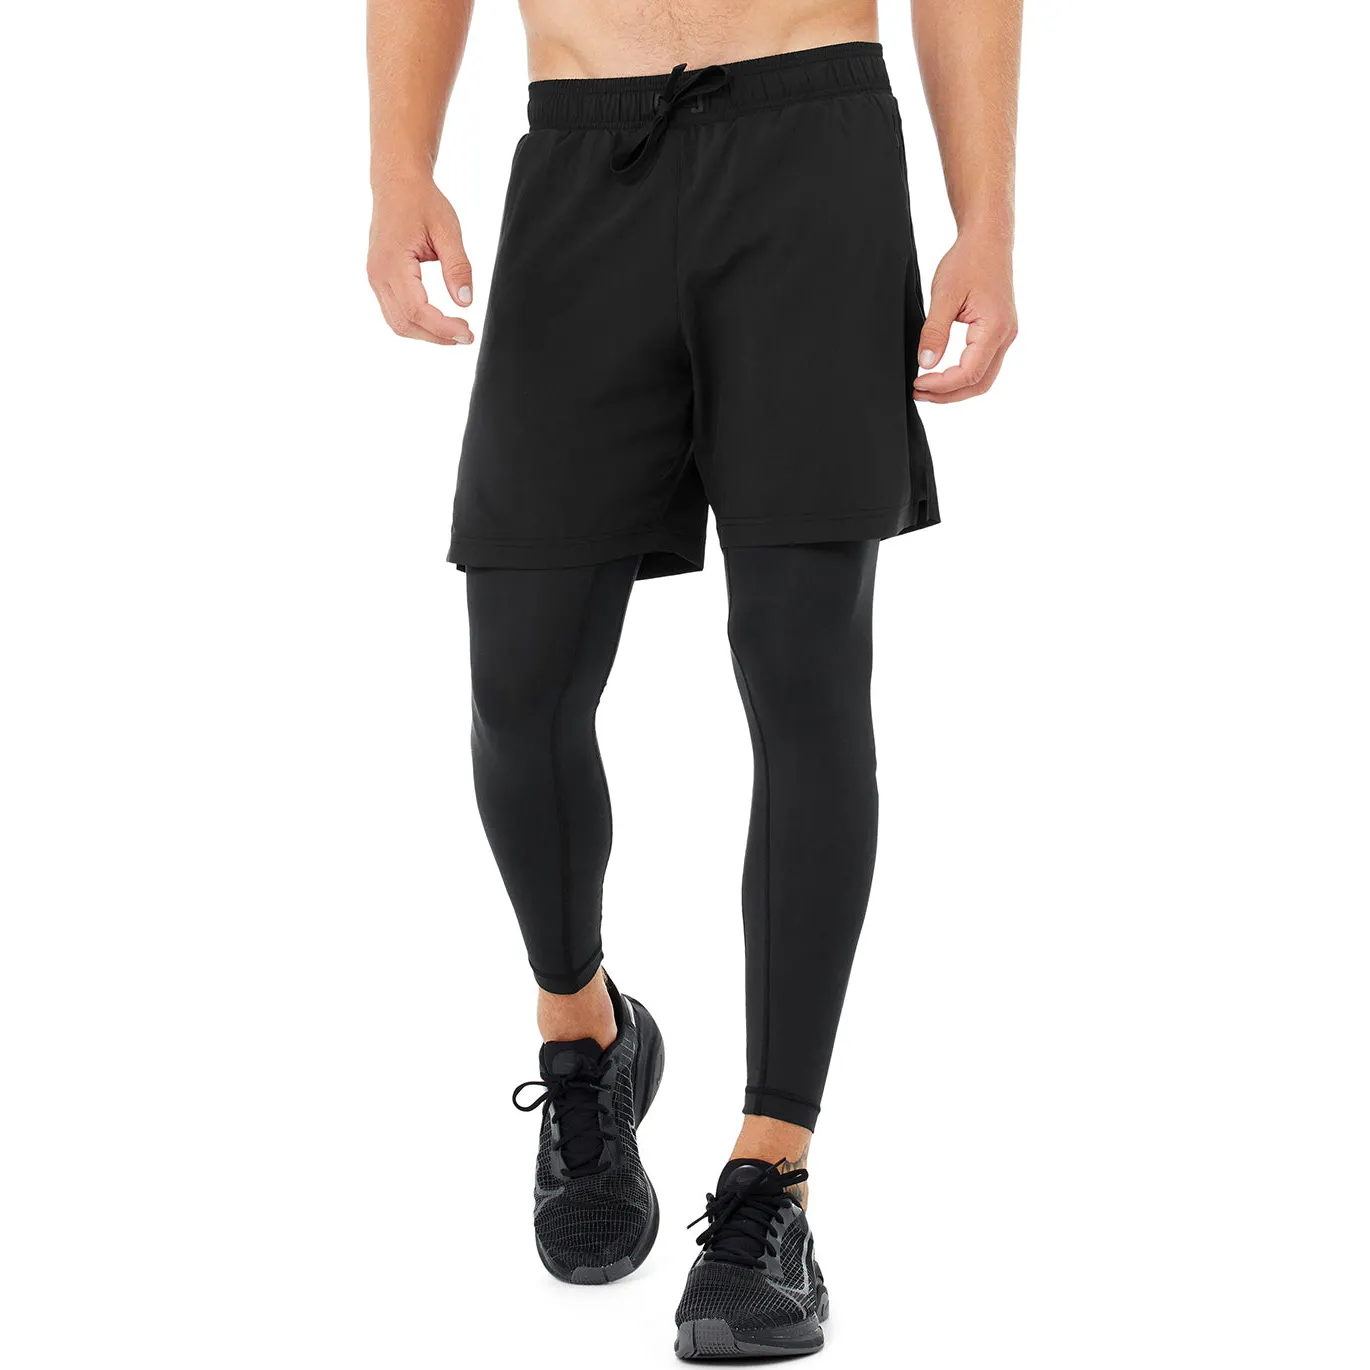 Sweat-Wicking Training für Herren Jogging Wear Slim Fit Laufhose mit Pocket Compression Leggings 2 in 1 Herren Sport hose